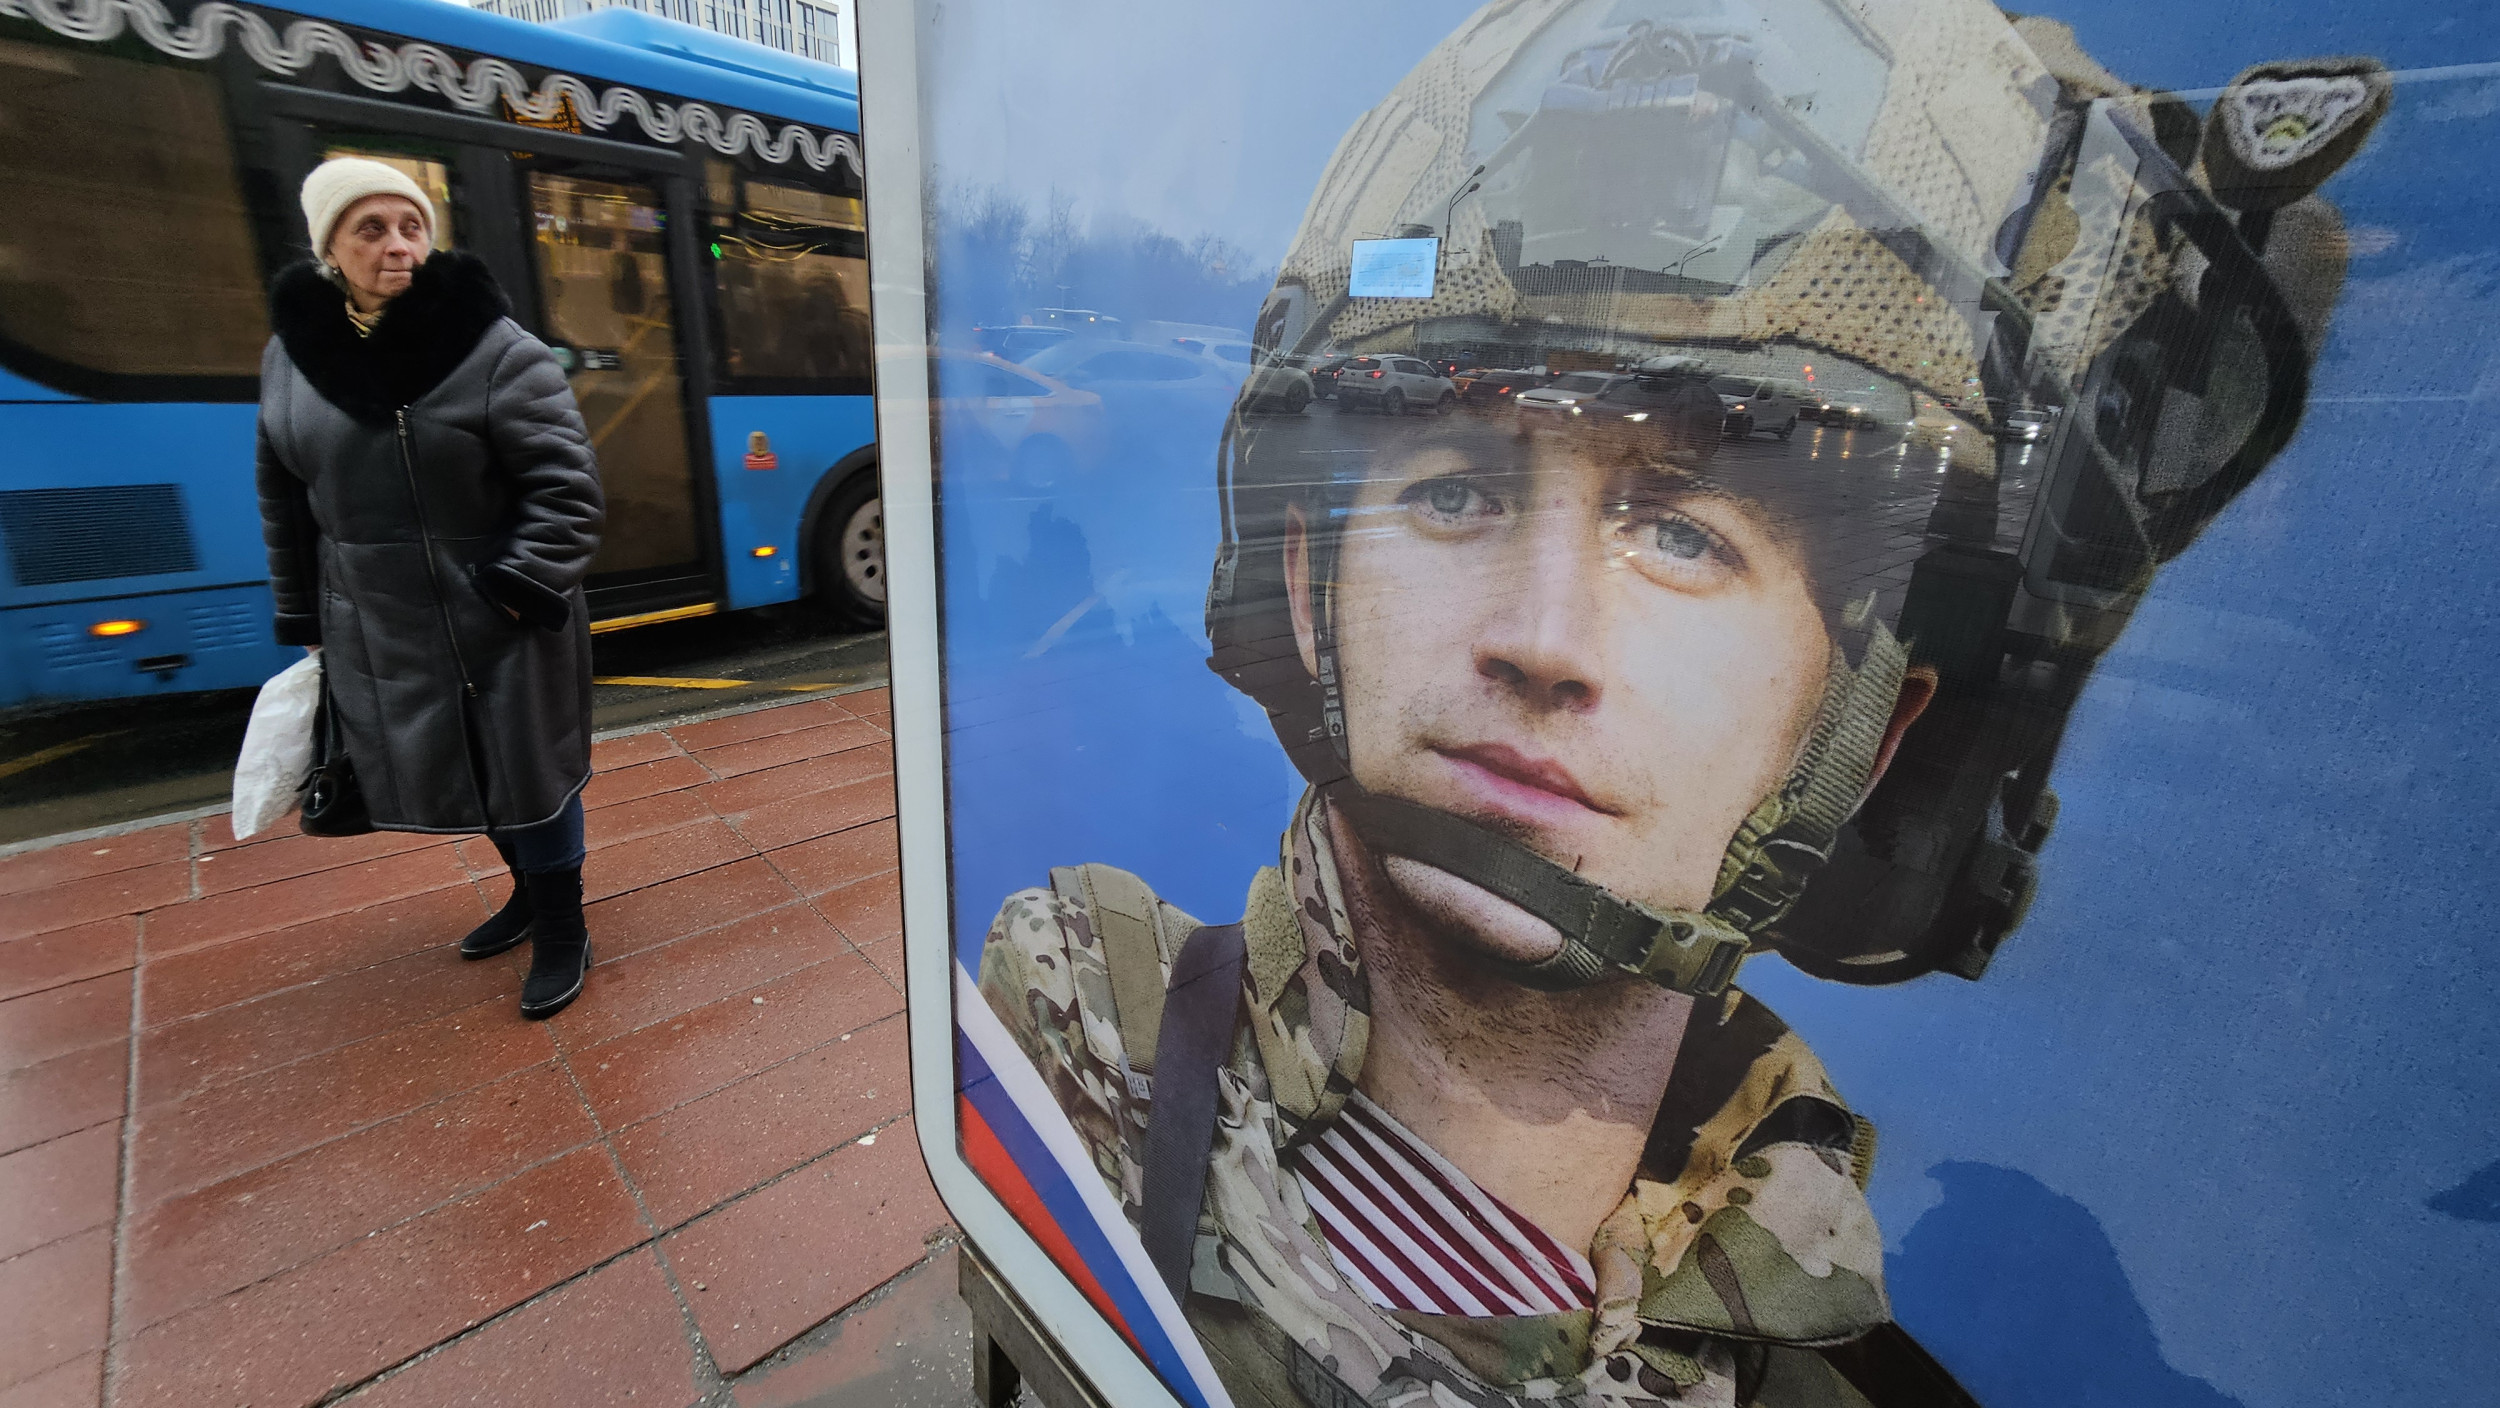 Rosyjskie wojska „masowo znikają” w Chersoniu: grupa ruchu oporu